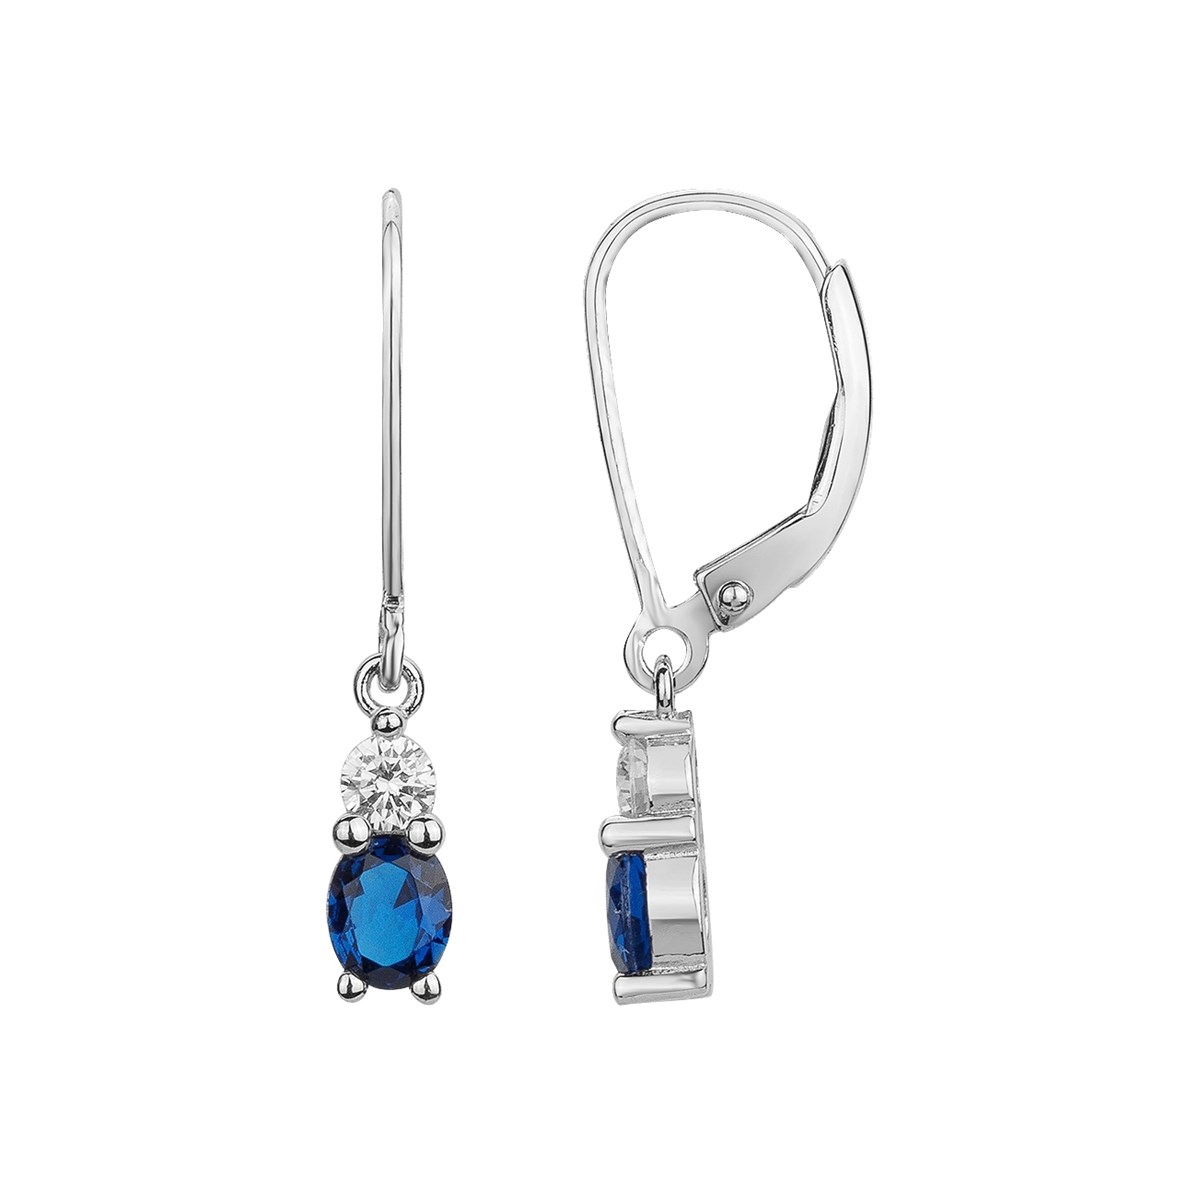 Boucles d'oreilles pendantes en Argent avec spinelle bleu saphir